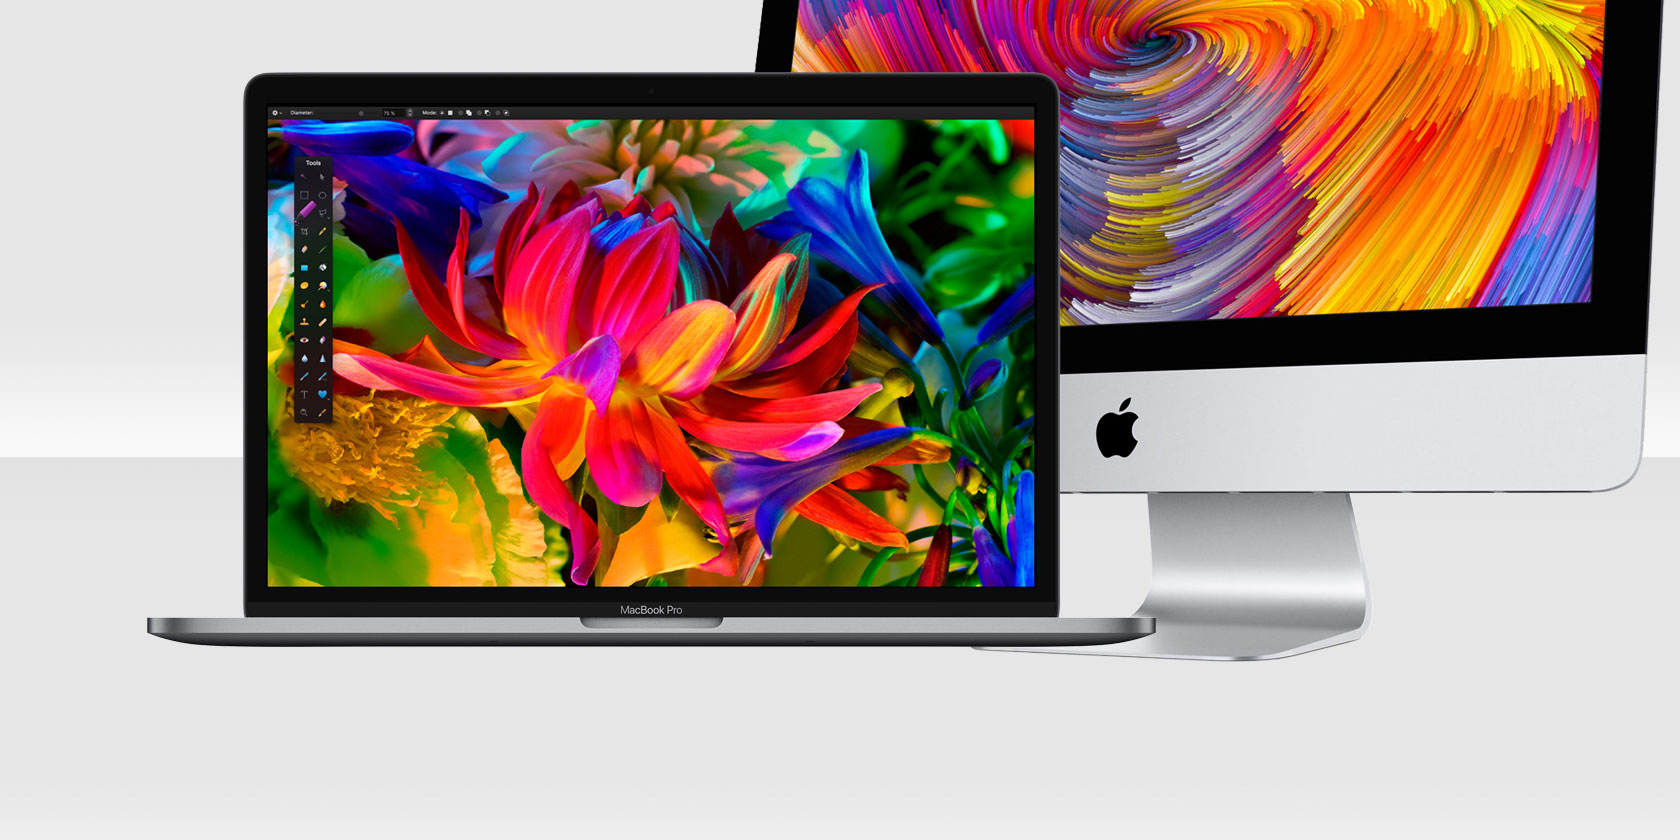 Lựa chọn ngớ ngẫn: Macbook Pro hay iMac?